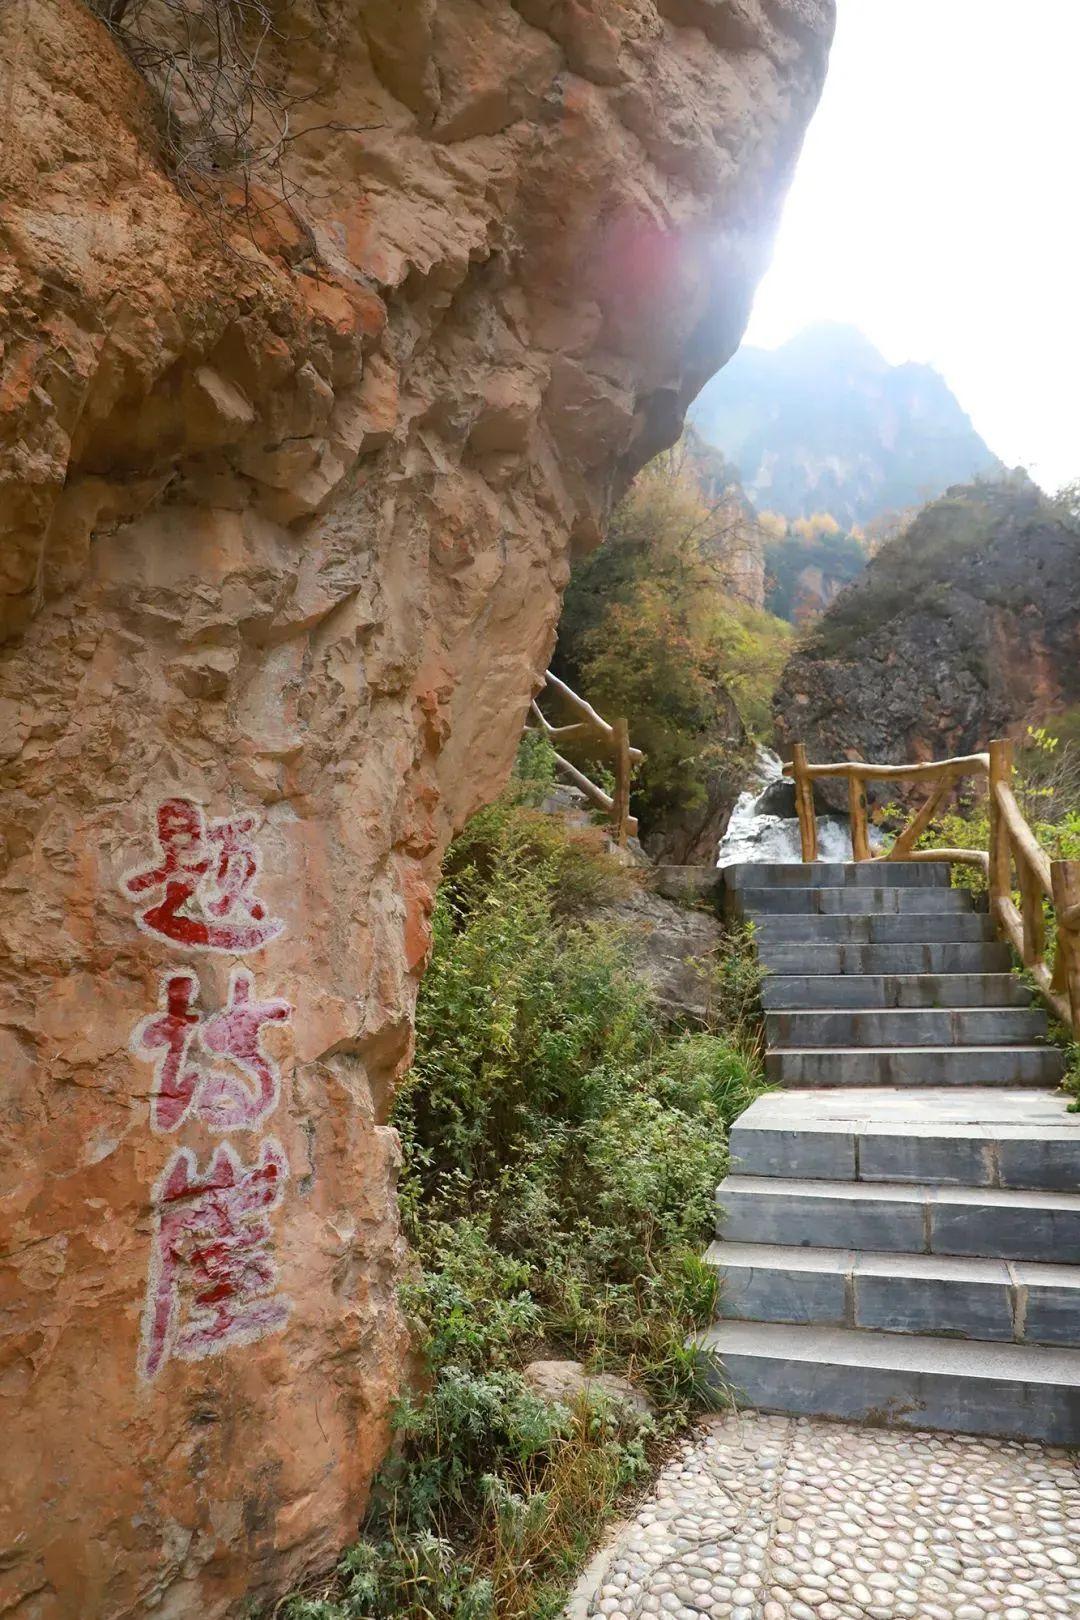 【携程攻略】漳县贵清山旅游风景区景点,定西市最值得一去地方。最佳季节6月至10月。